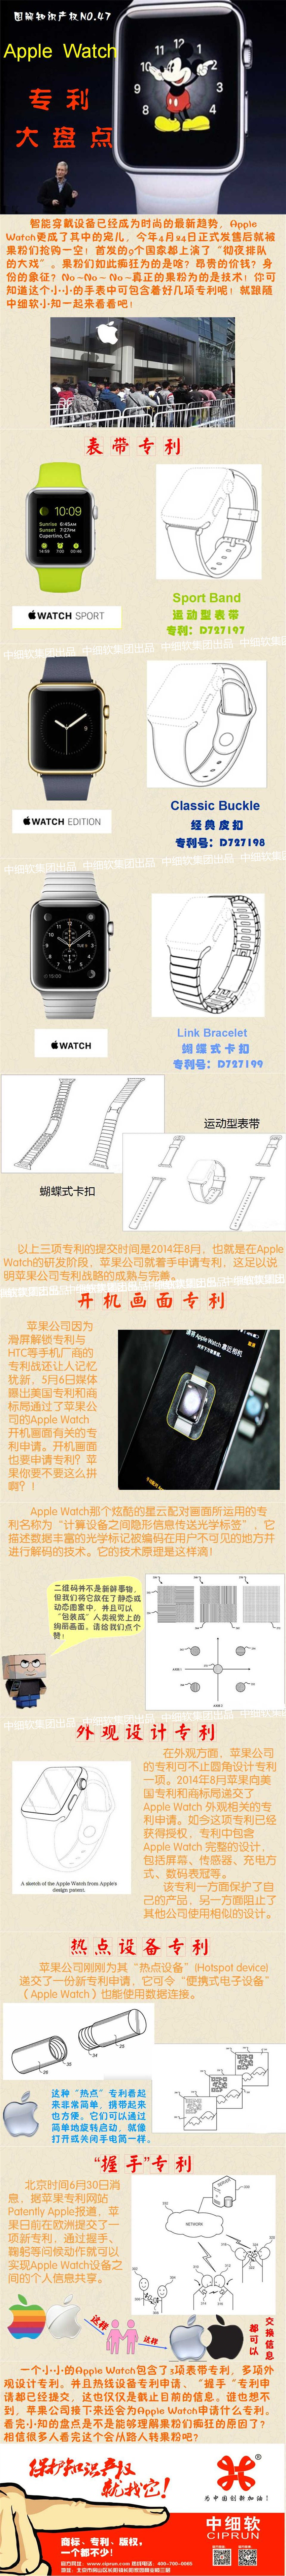 20150707李琳 图解 Apple Watch专利大盘点.jpg